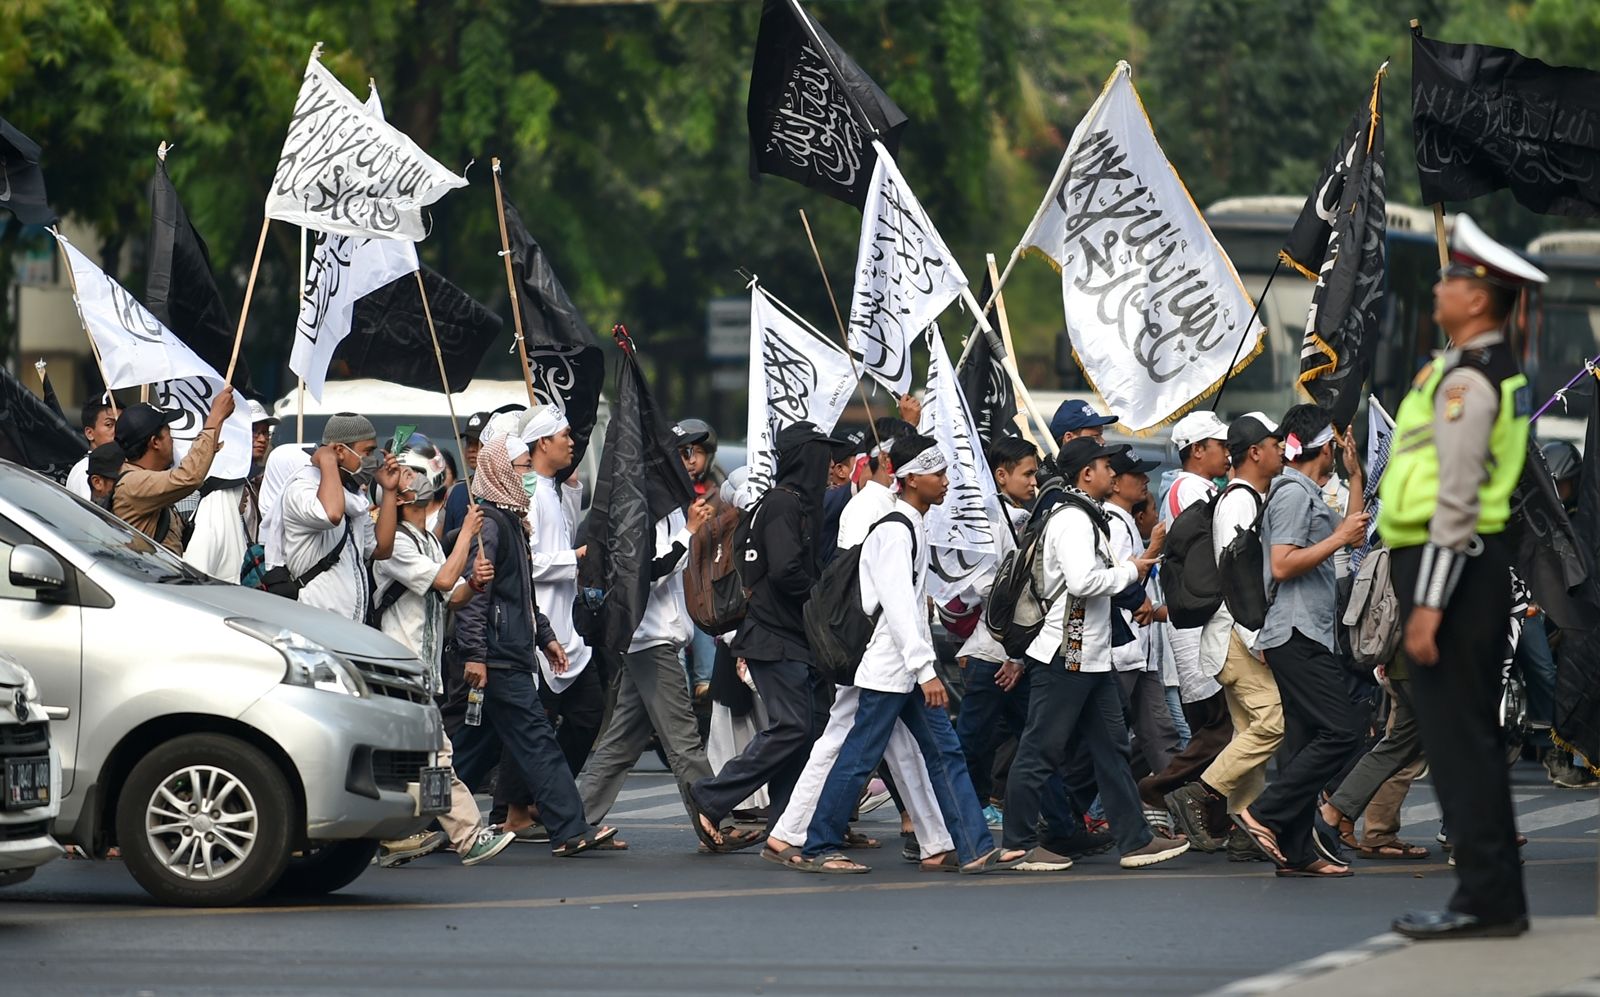 AFP-ขบวนประท้วงต่อต้านโจโกวีที่ไม่พอใจเรื่องการแก้ไขกฎหมายลดอำนาจหน่วยงานตรวจสอบทุจริตในอินโดนีเซีย.jpg